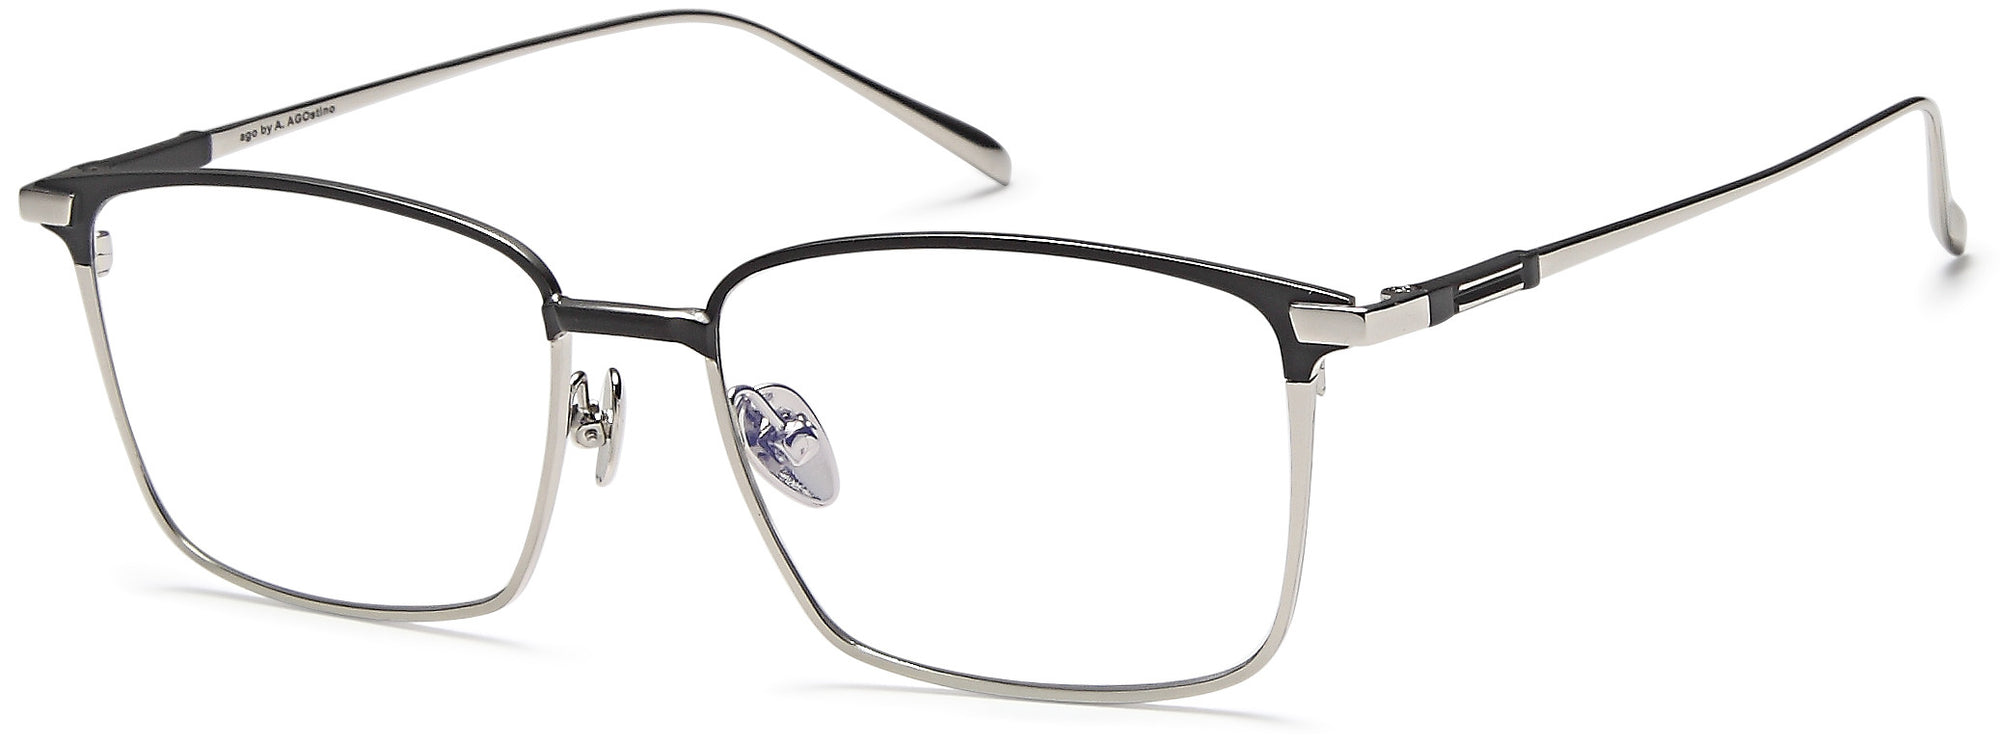 AGO Eyeglasses MF90002